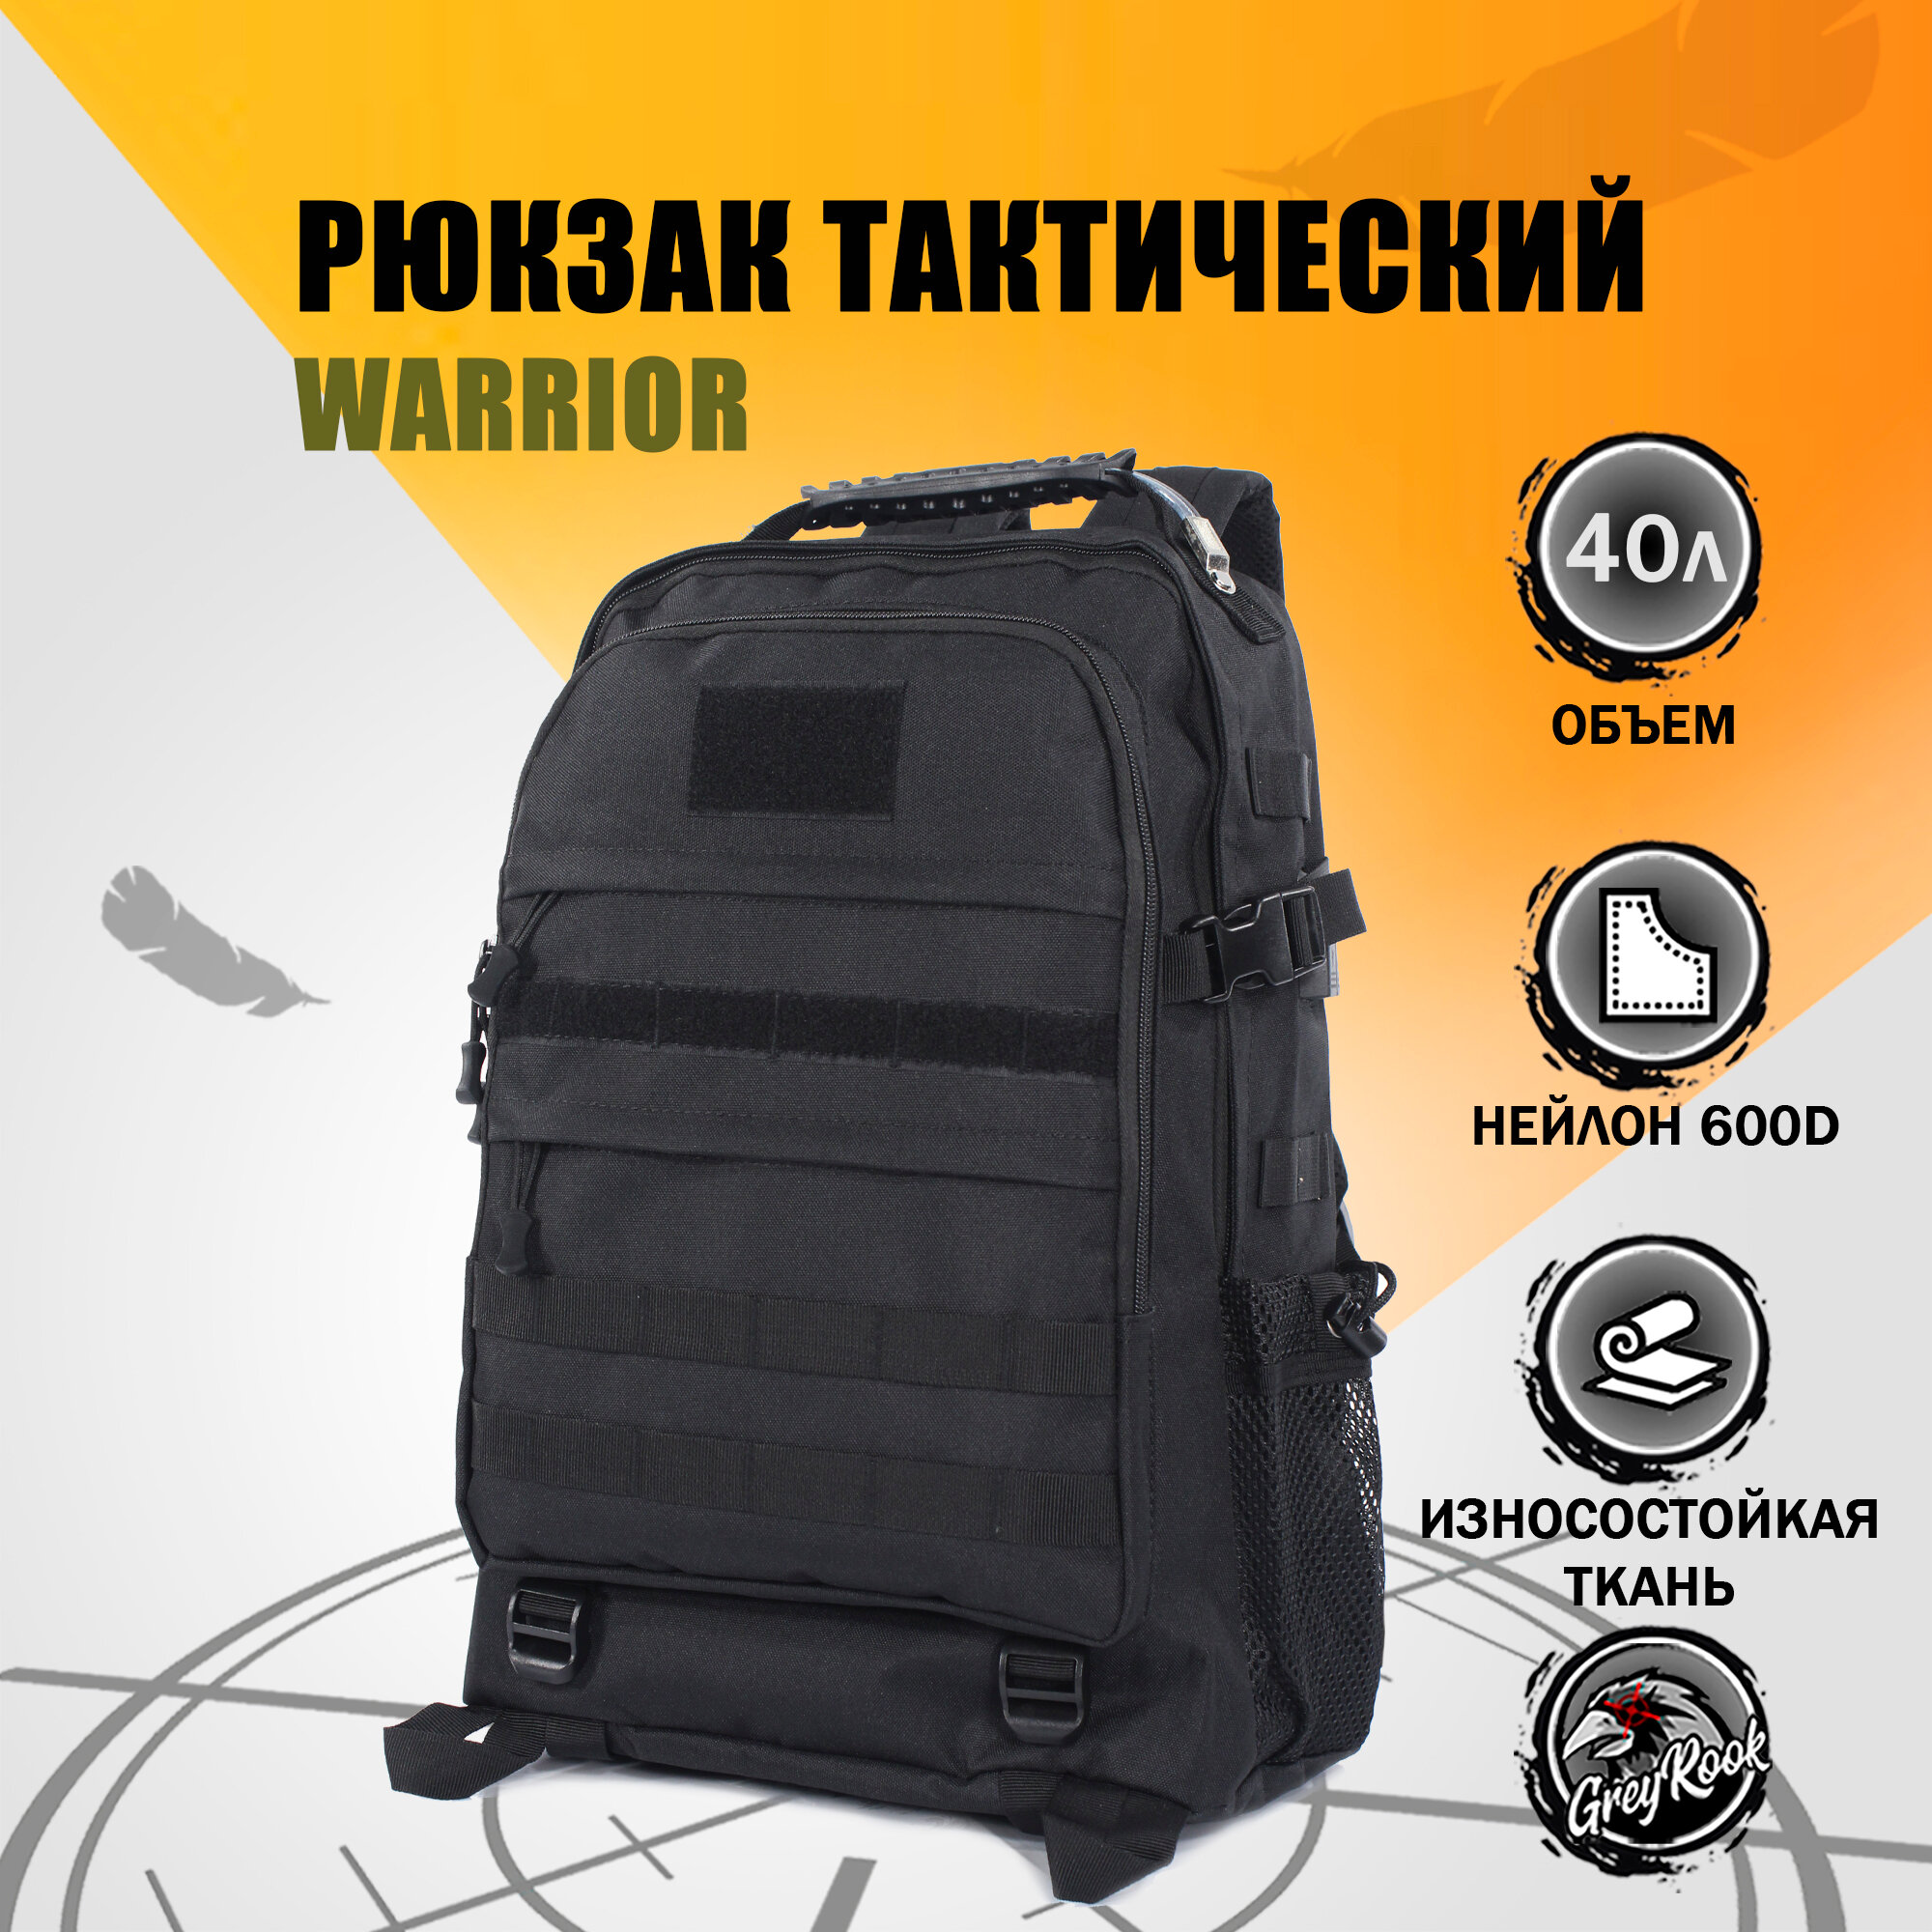 Рюкзак тактический WARRIOR, 40 литров, Цвет: Чёрный